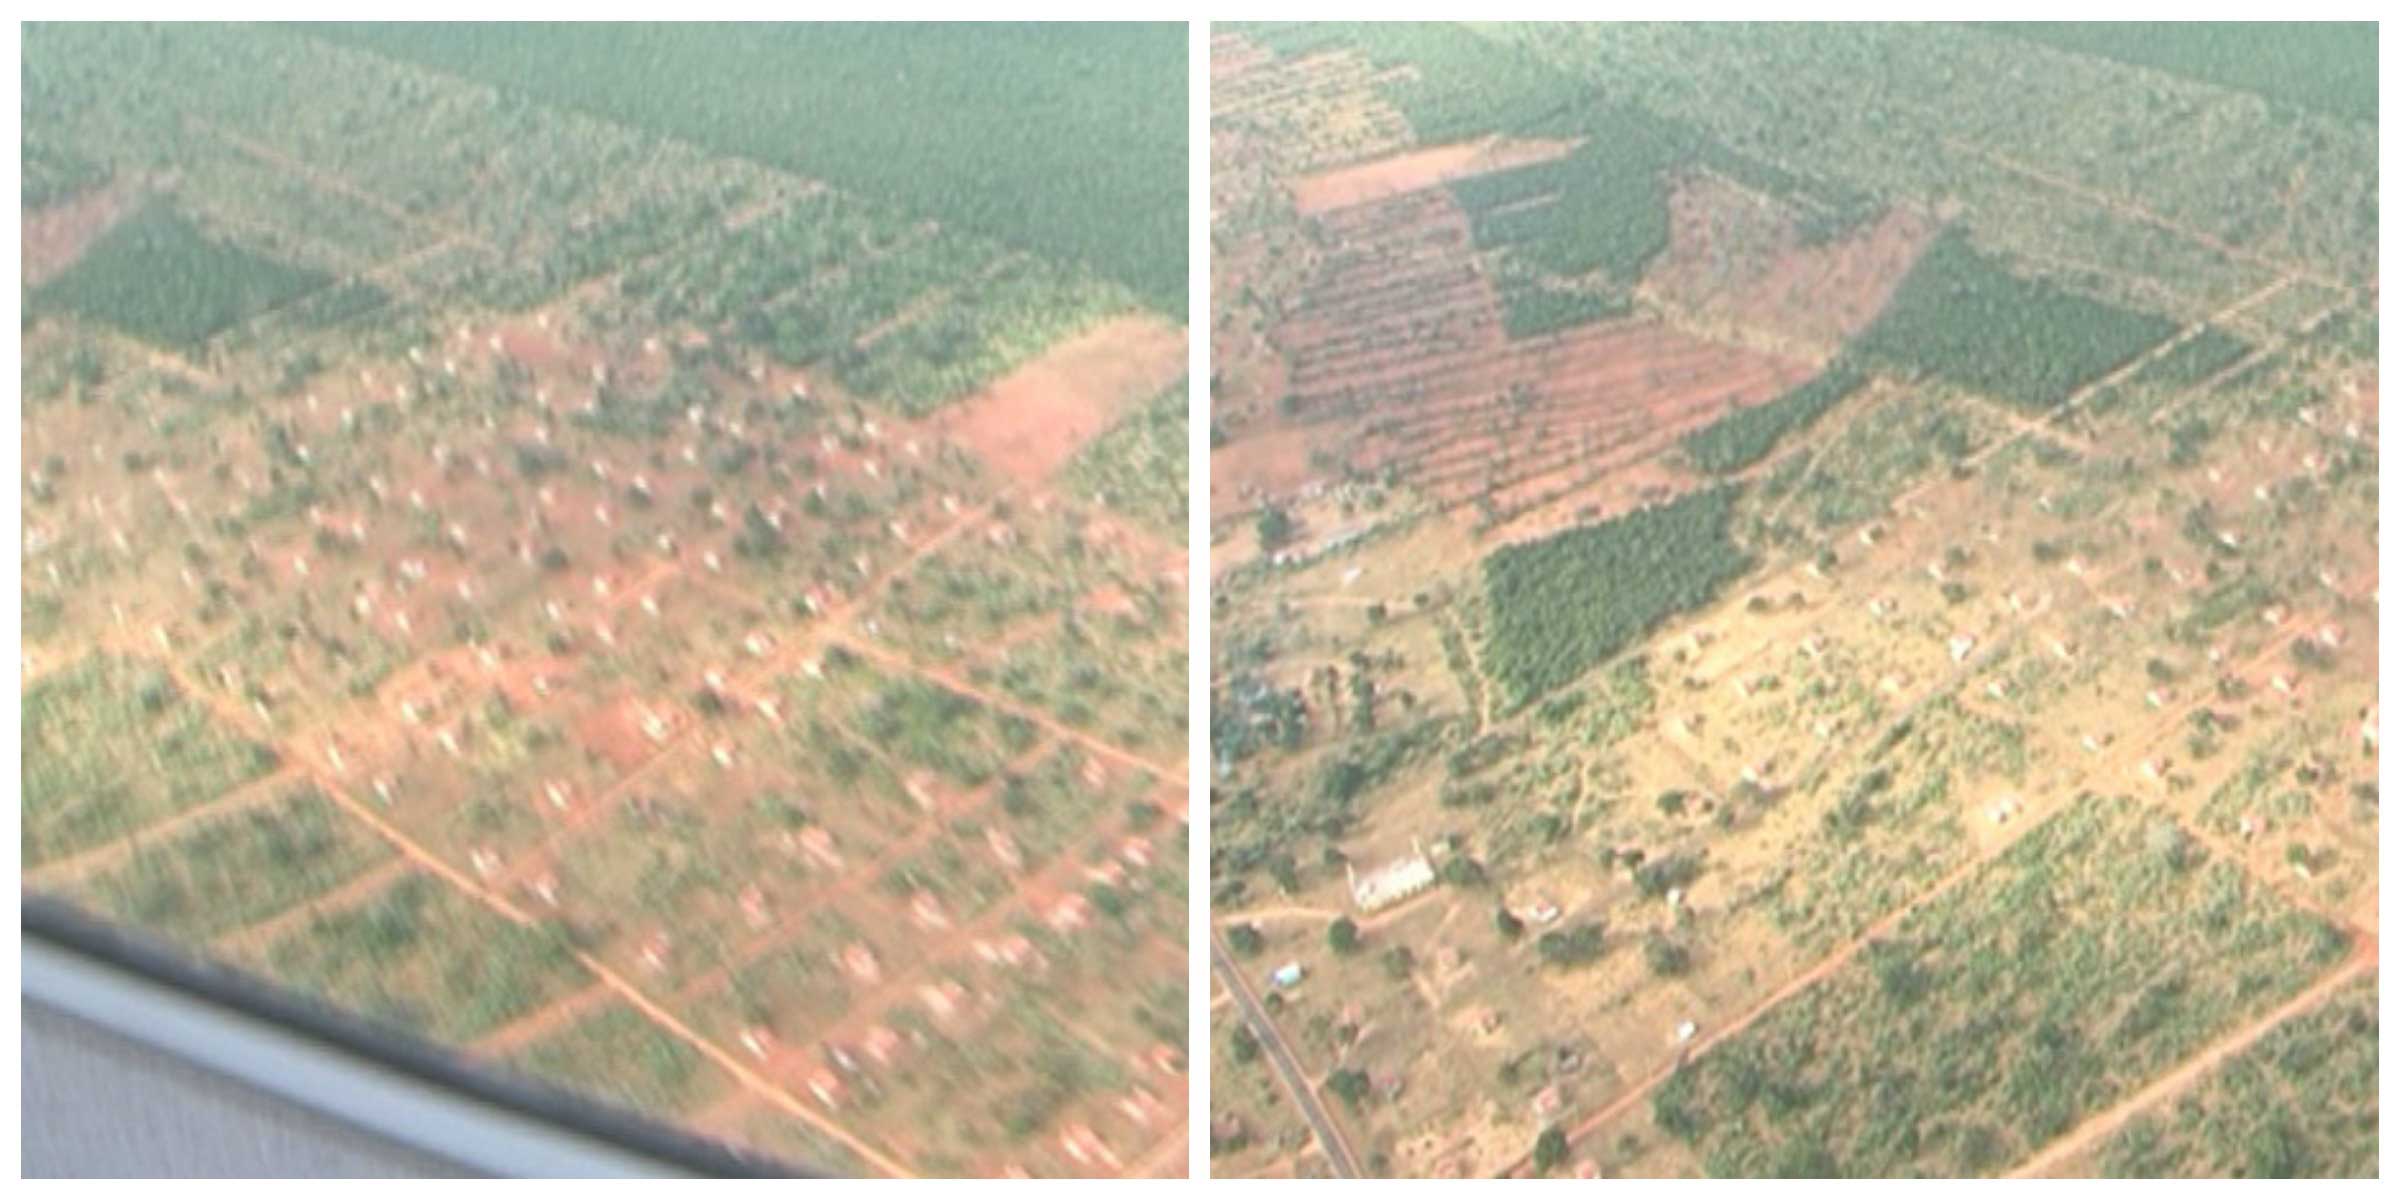 Wilpattu deforestation case verdict on 31st July